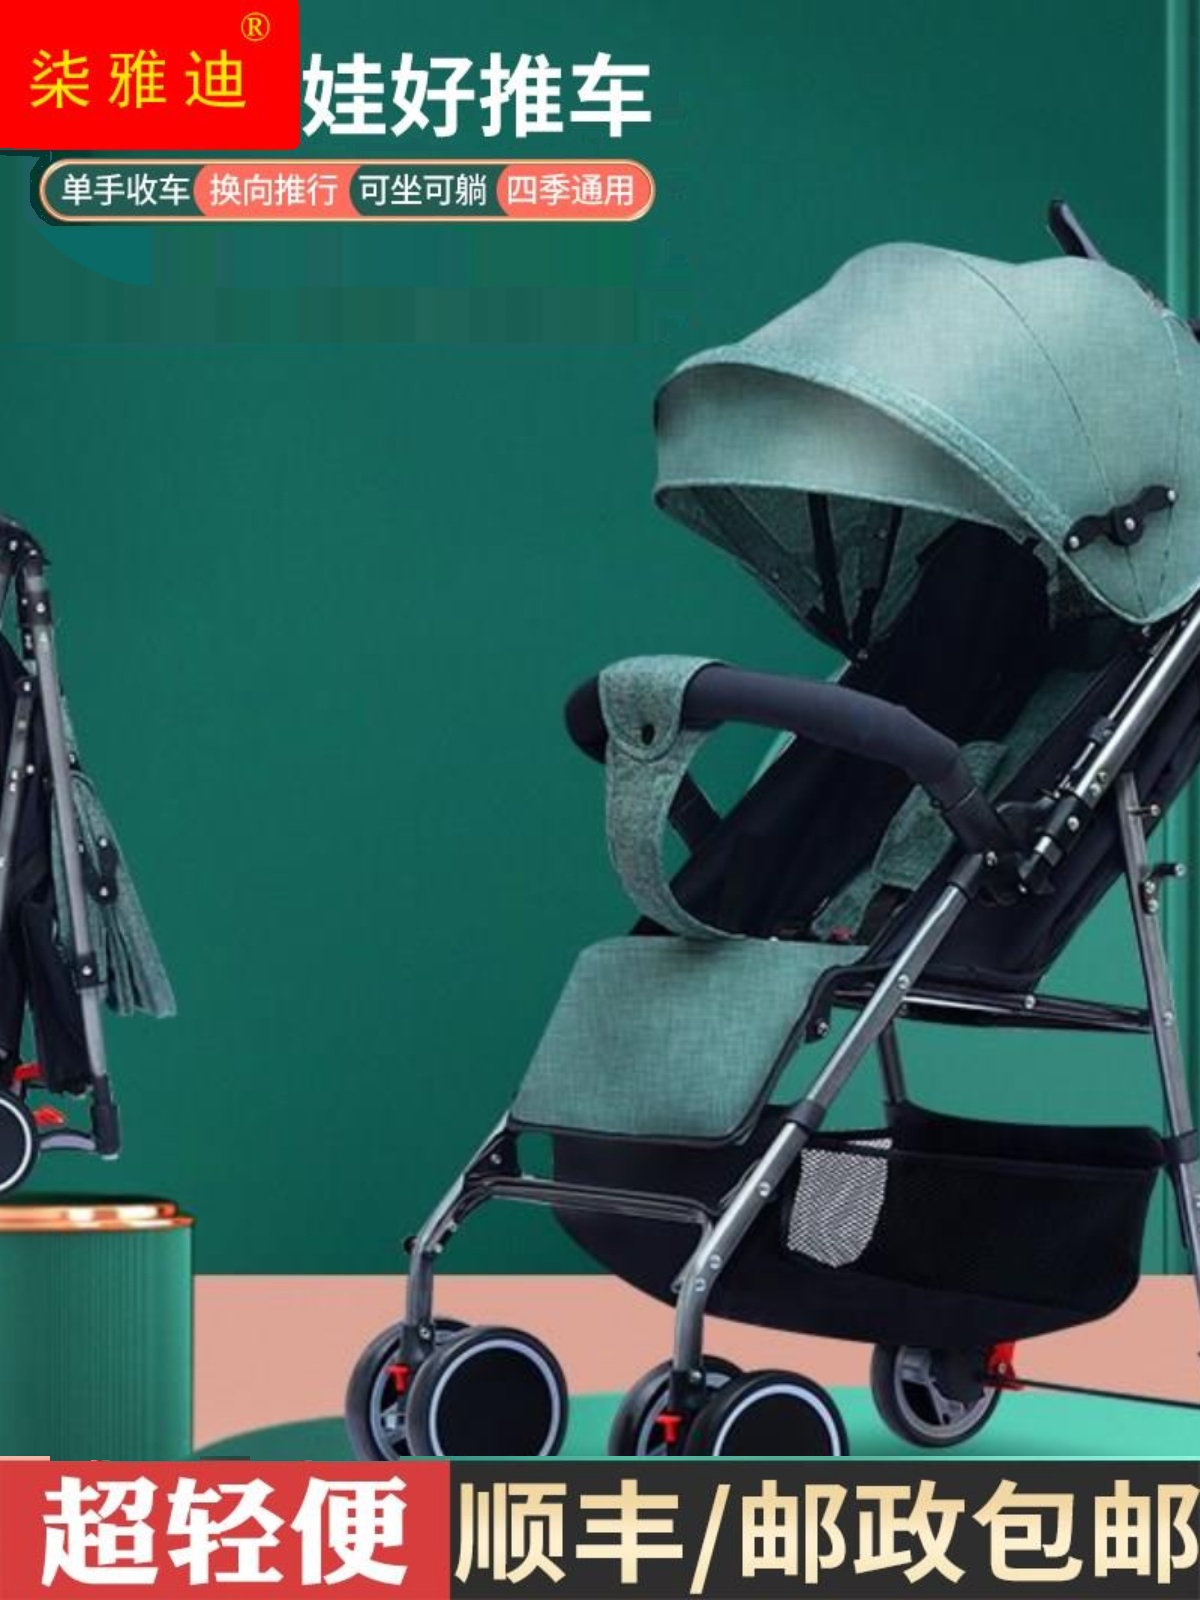 新品婴儿手推车床两用多功能可坐可躺双向超轻便携简易一键折叠0